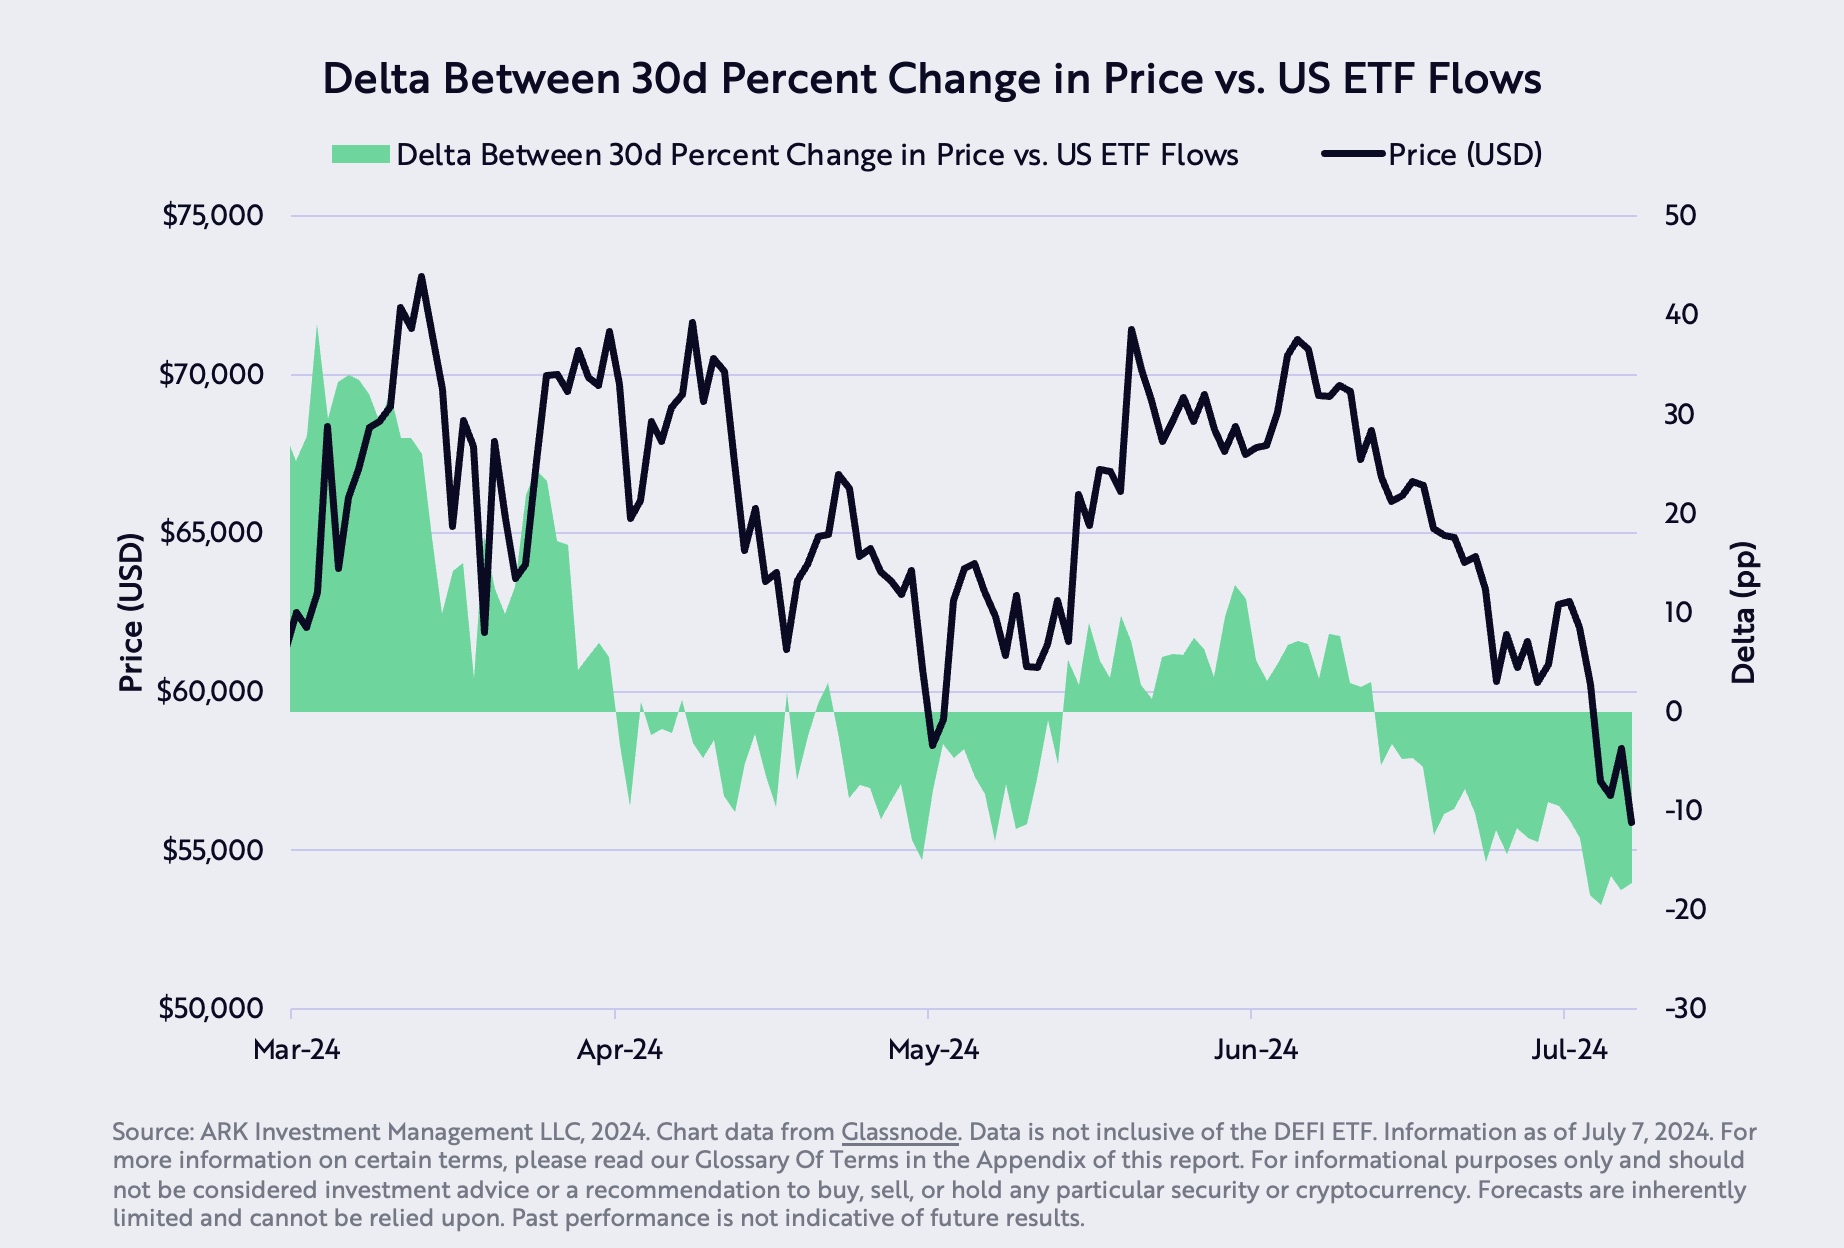 Delta between 30d percent change in price vs US ETFs